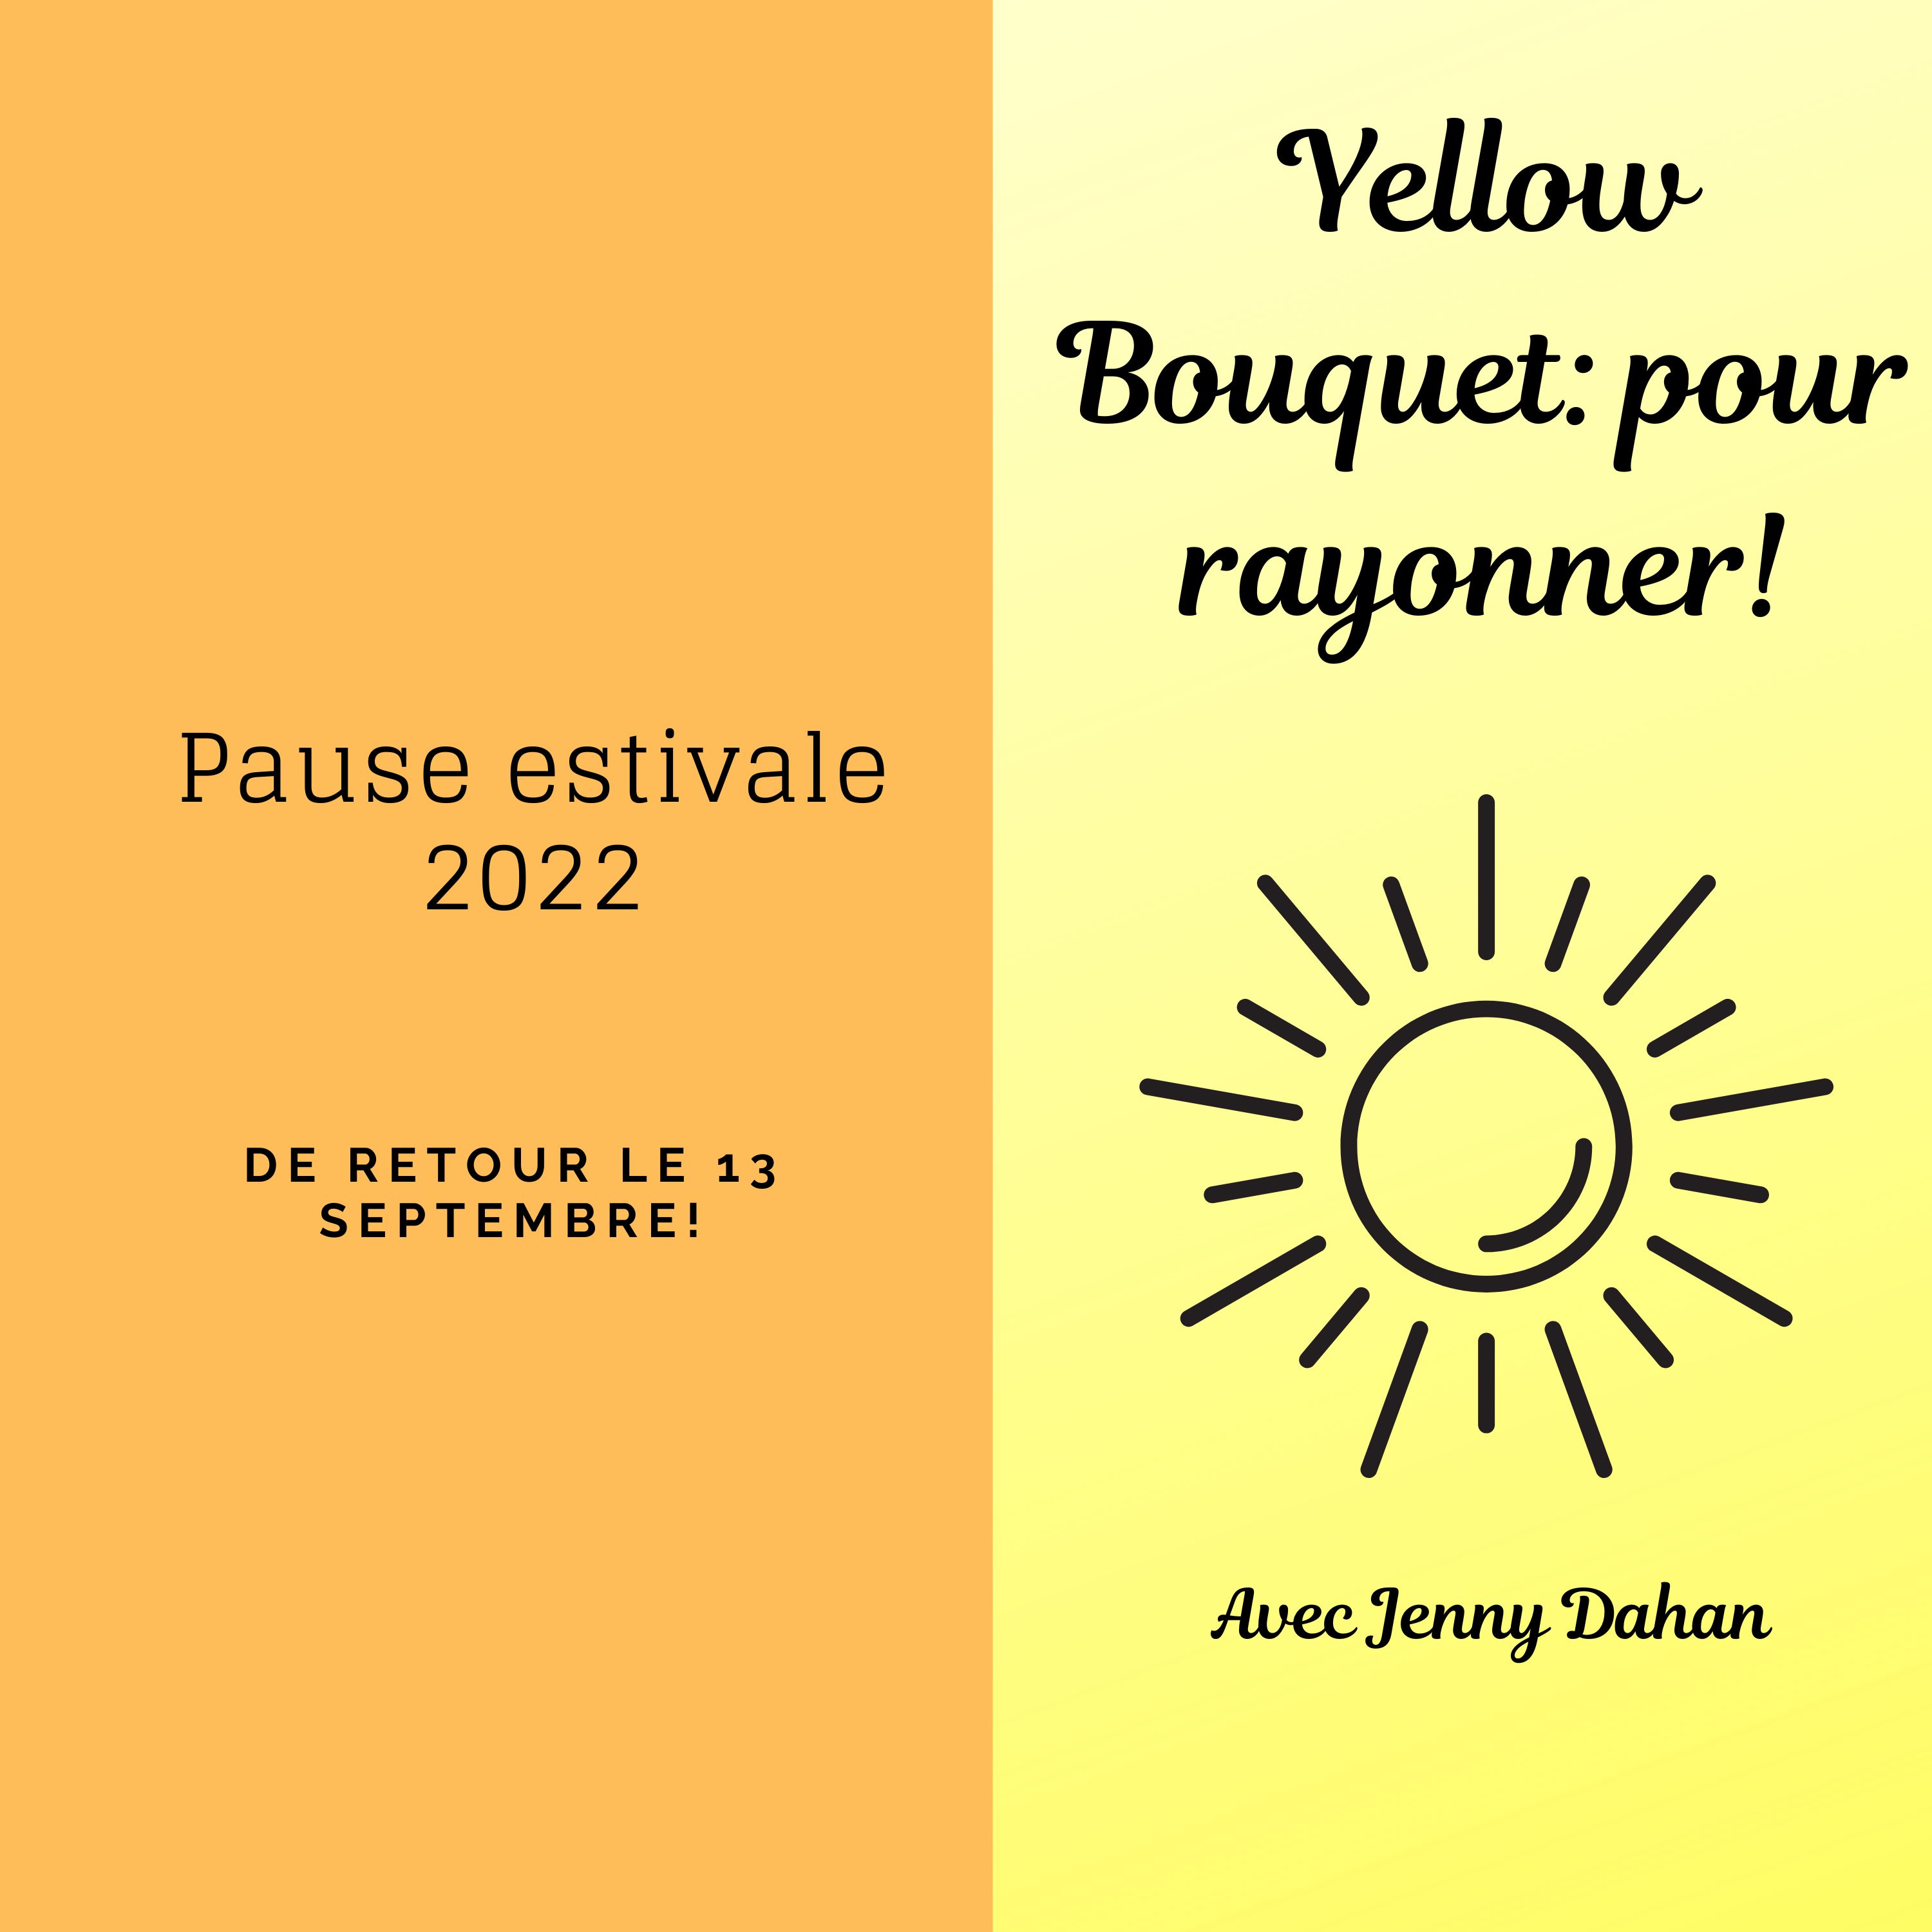 Yellow Bouquet: pour rayonner! Pause estivale 2022